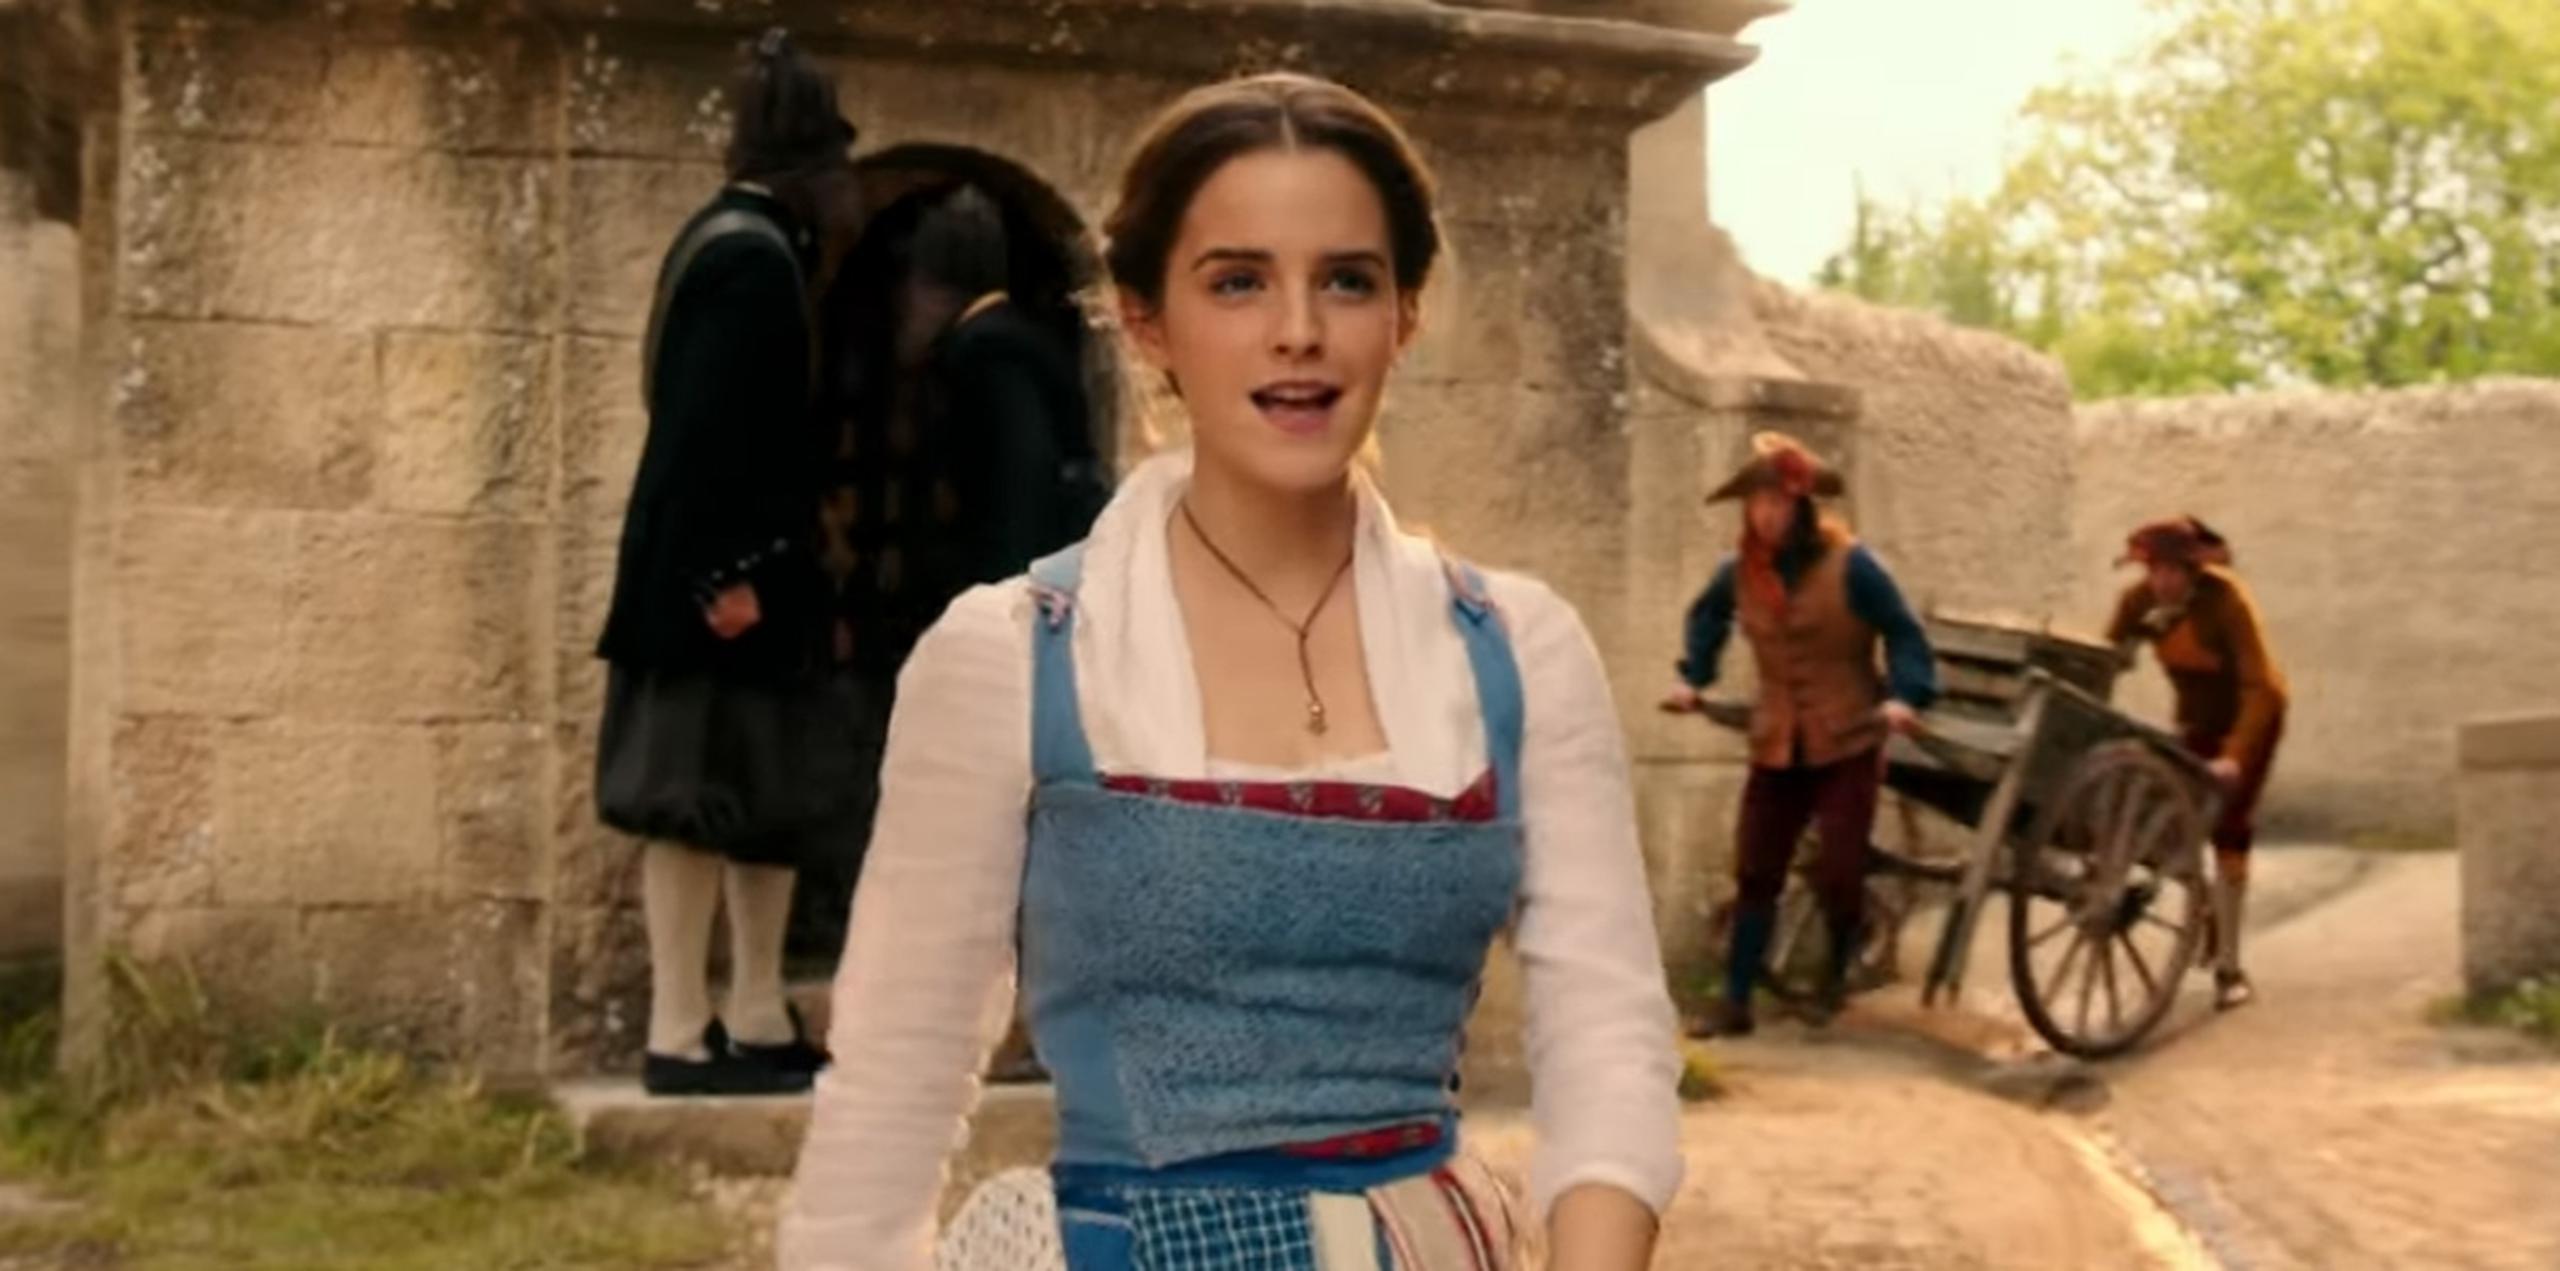 El video de casi un minuto muestra a la joven pasearse por la villa de la campiña francesa, mientras canta rodeada de los otros habitantes del lugar.